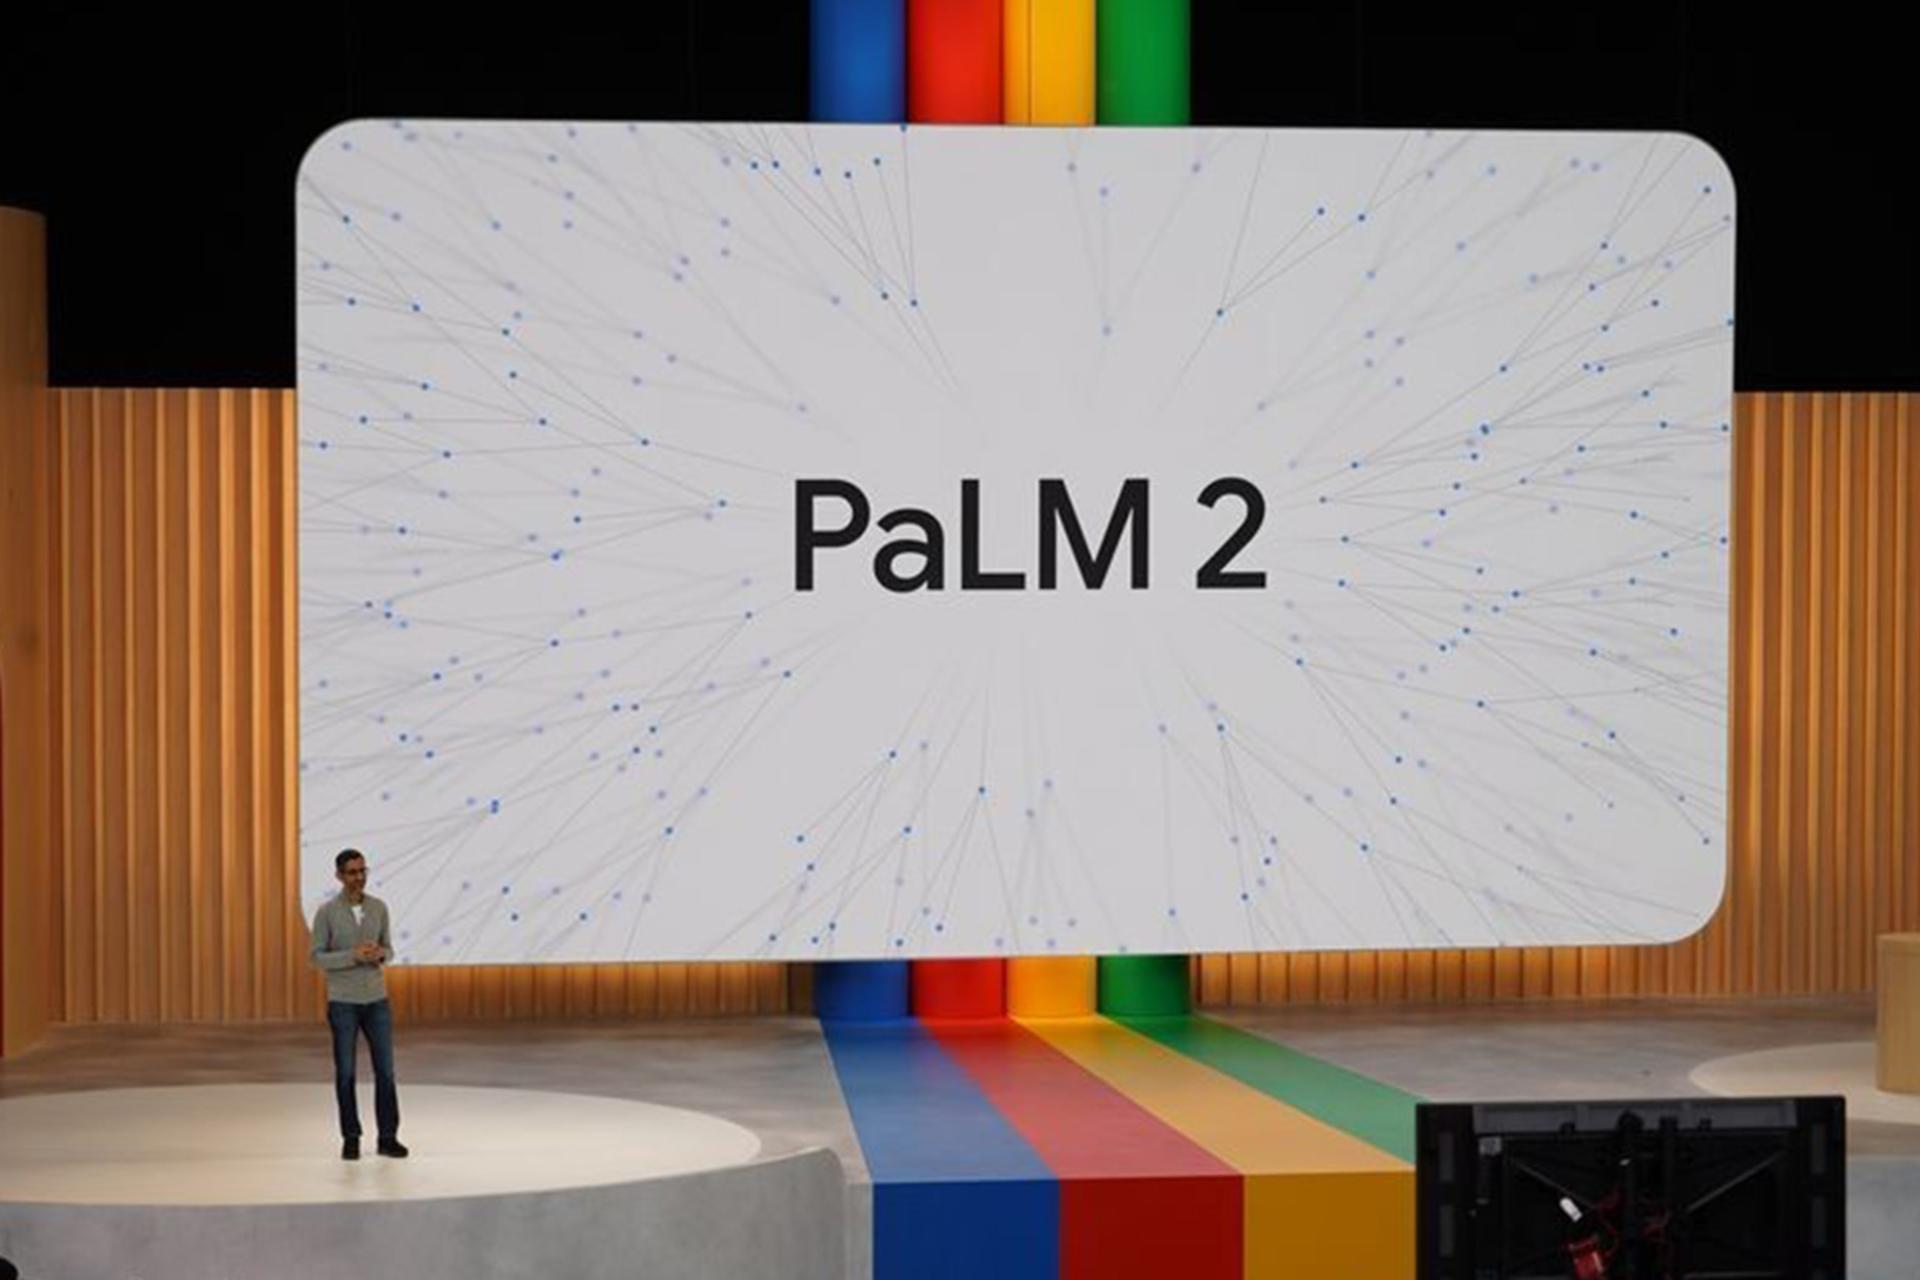 مدل زبانی PaLM 2 گوگل برای رقابت با GPT-4 معرفی شد؛ از متخصص سوالات پزشکی تا امنیت سایبری